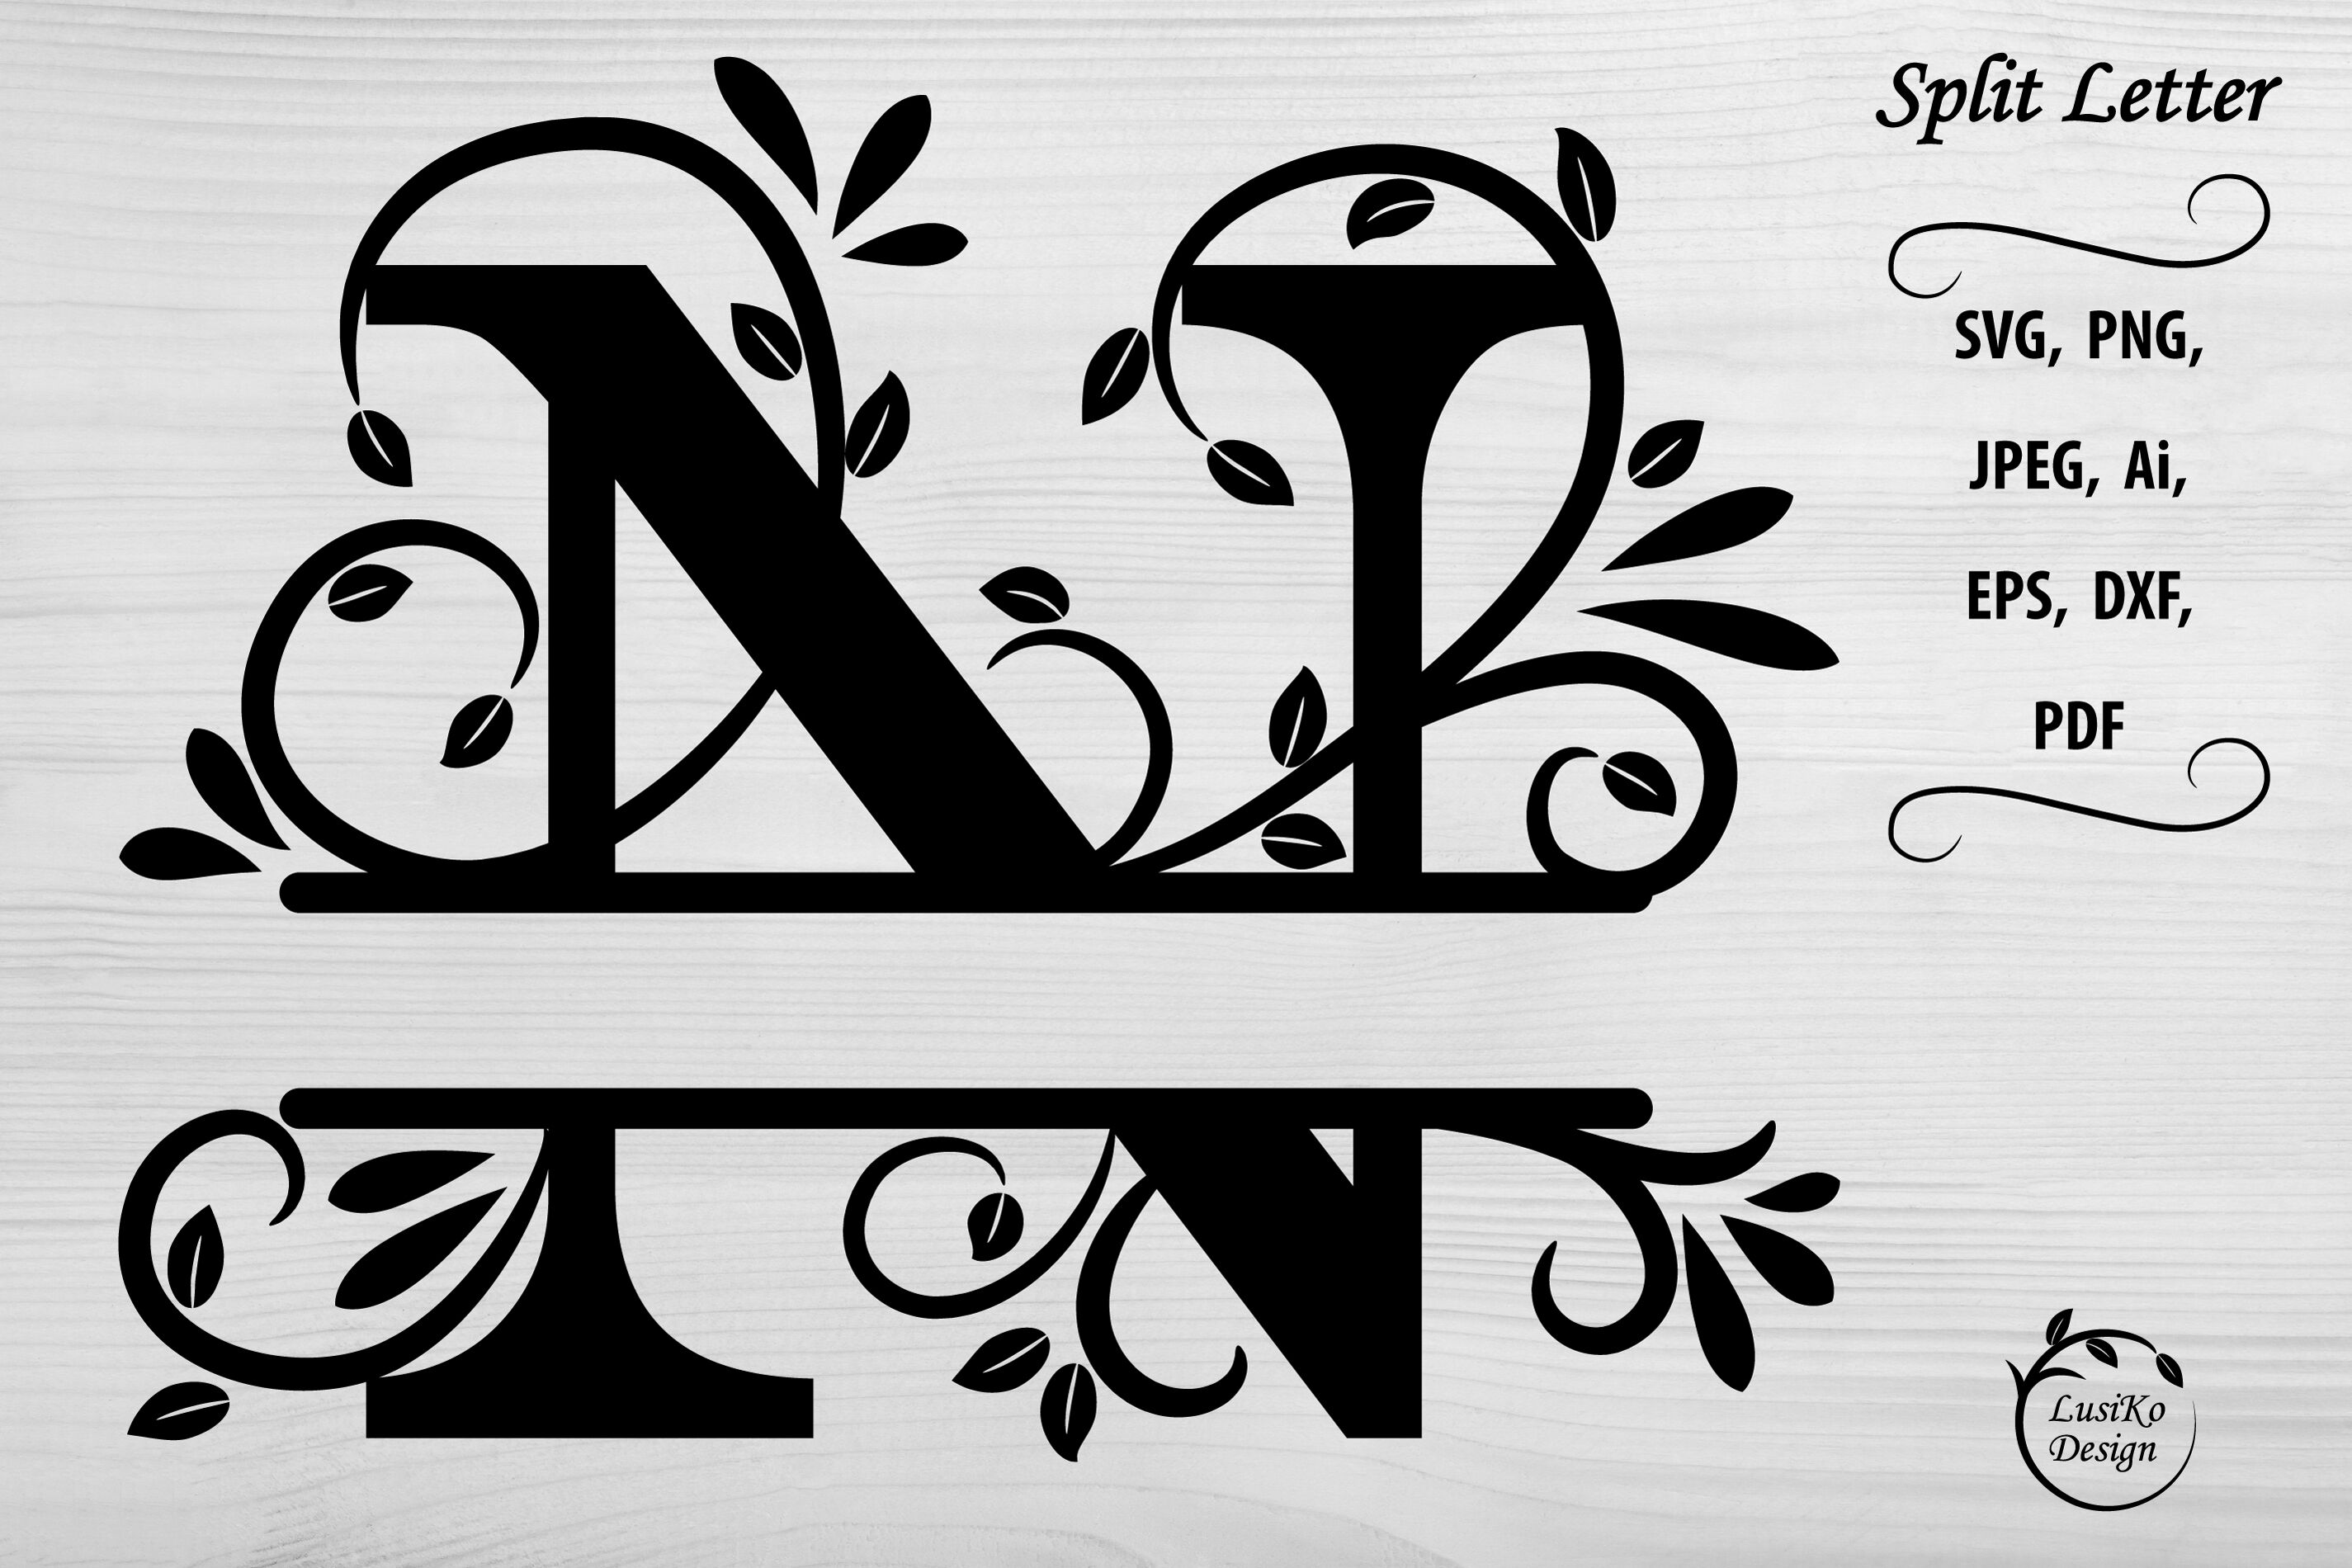 Letter M Floral Split Monogram SVG